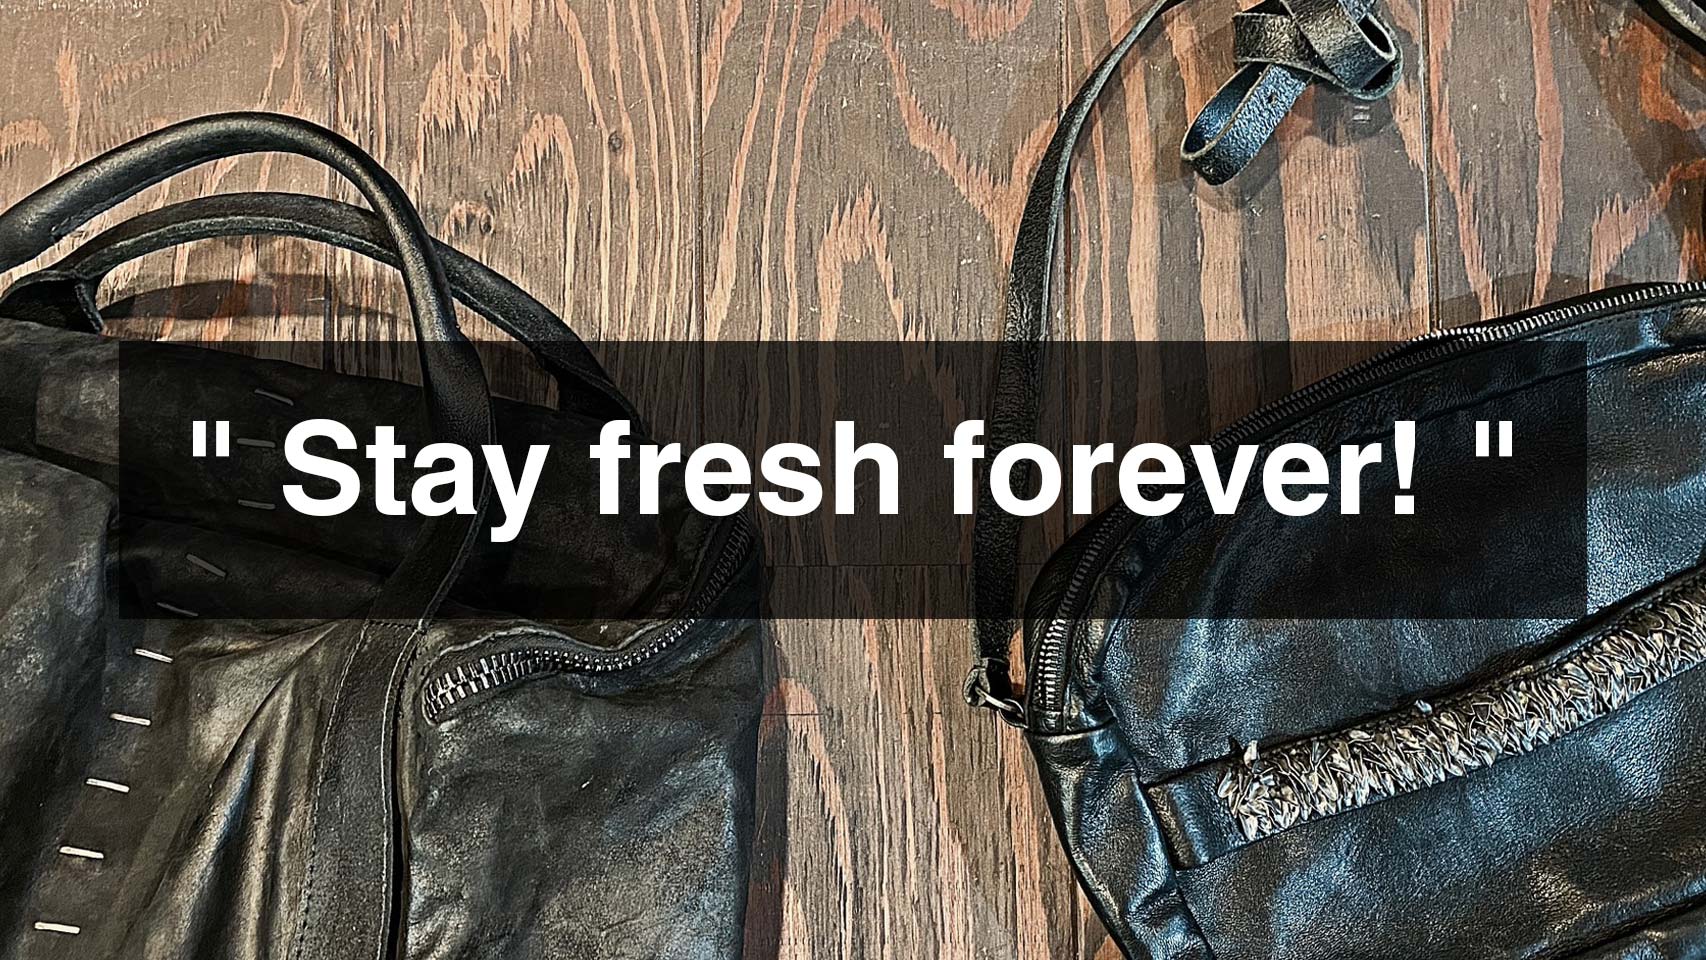 Stay fresh forever!